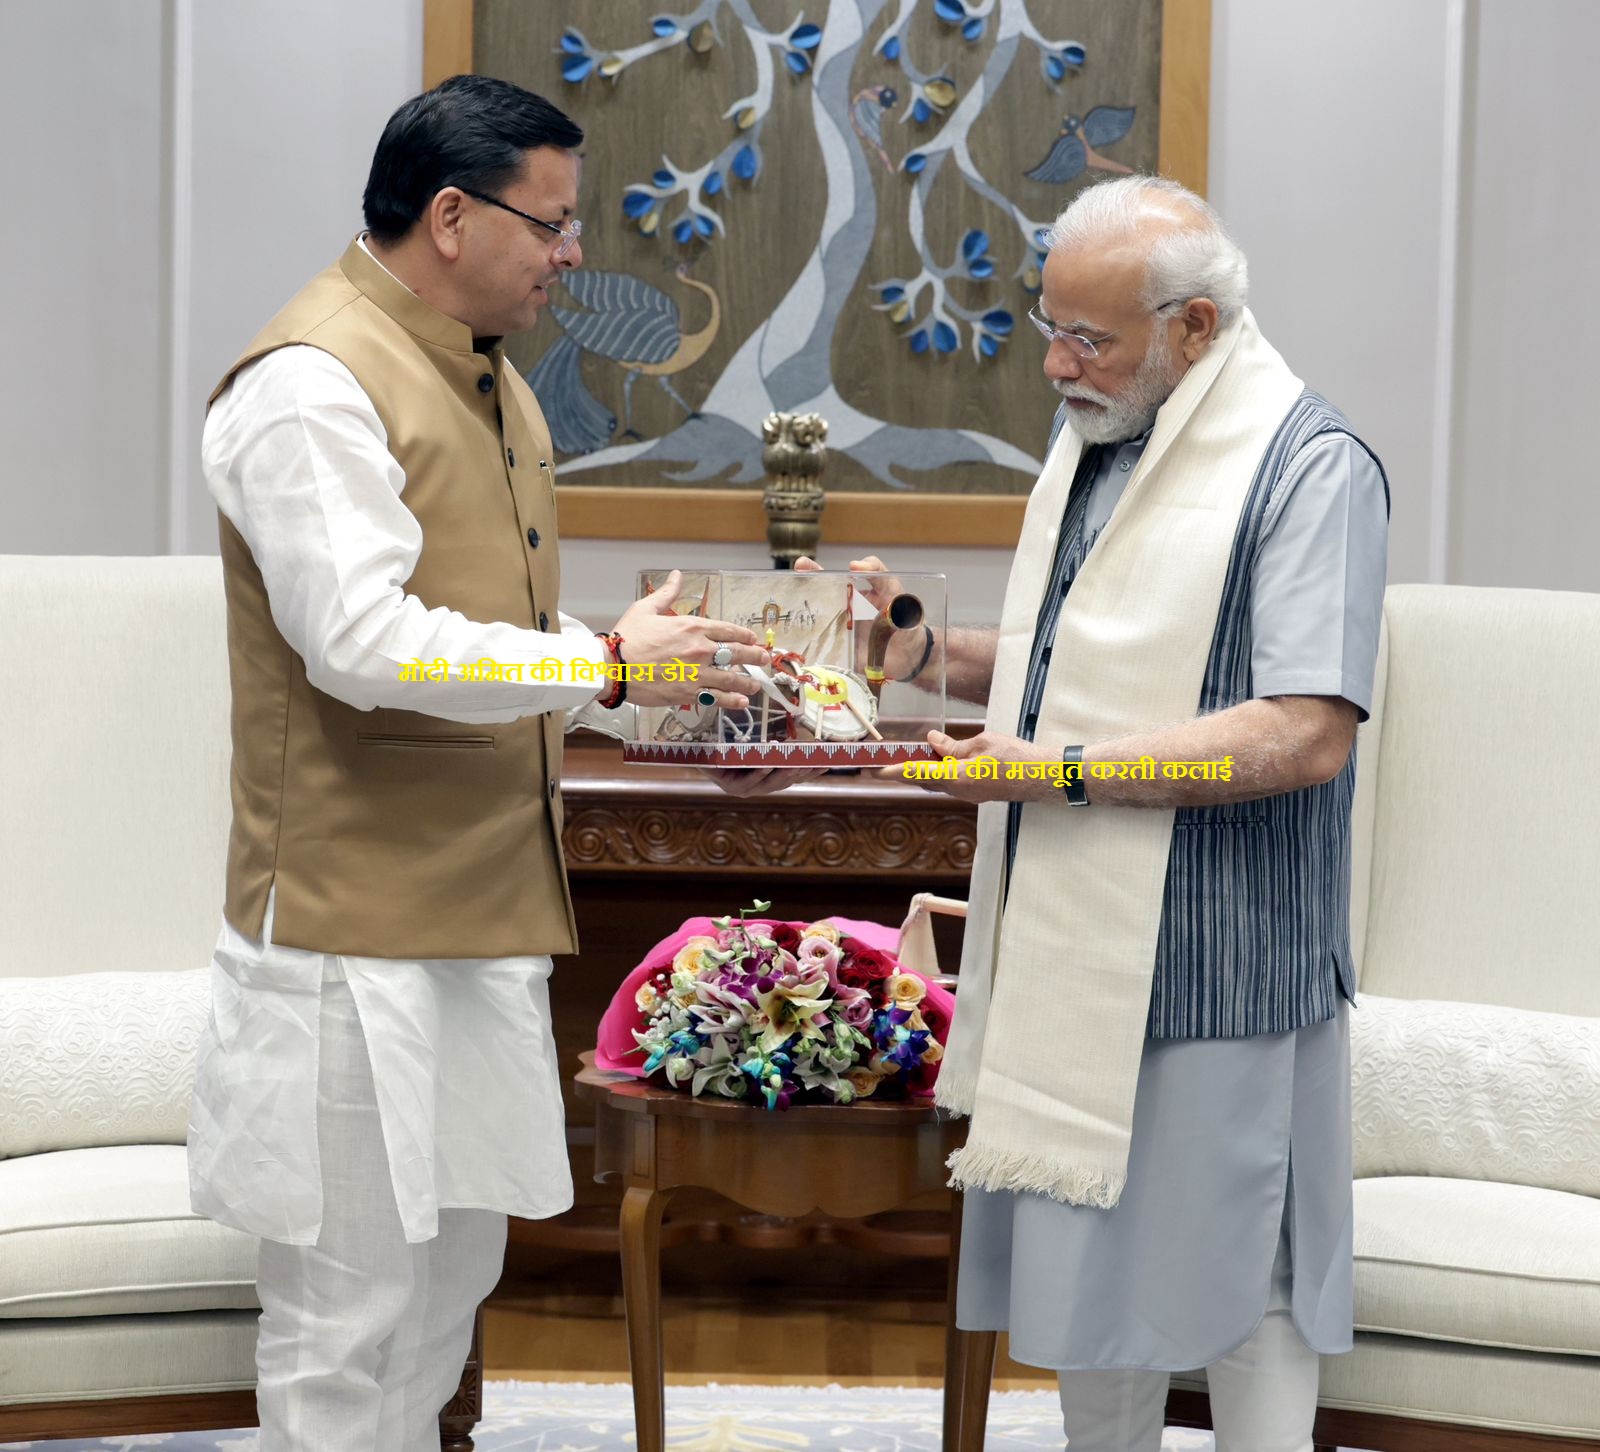 प्रधानमंत्री नरेंद्र मोदी से मुख्यमंत्री धामी मिले कैबिनेट विस्तार पर विराम